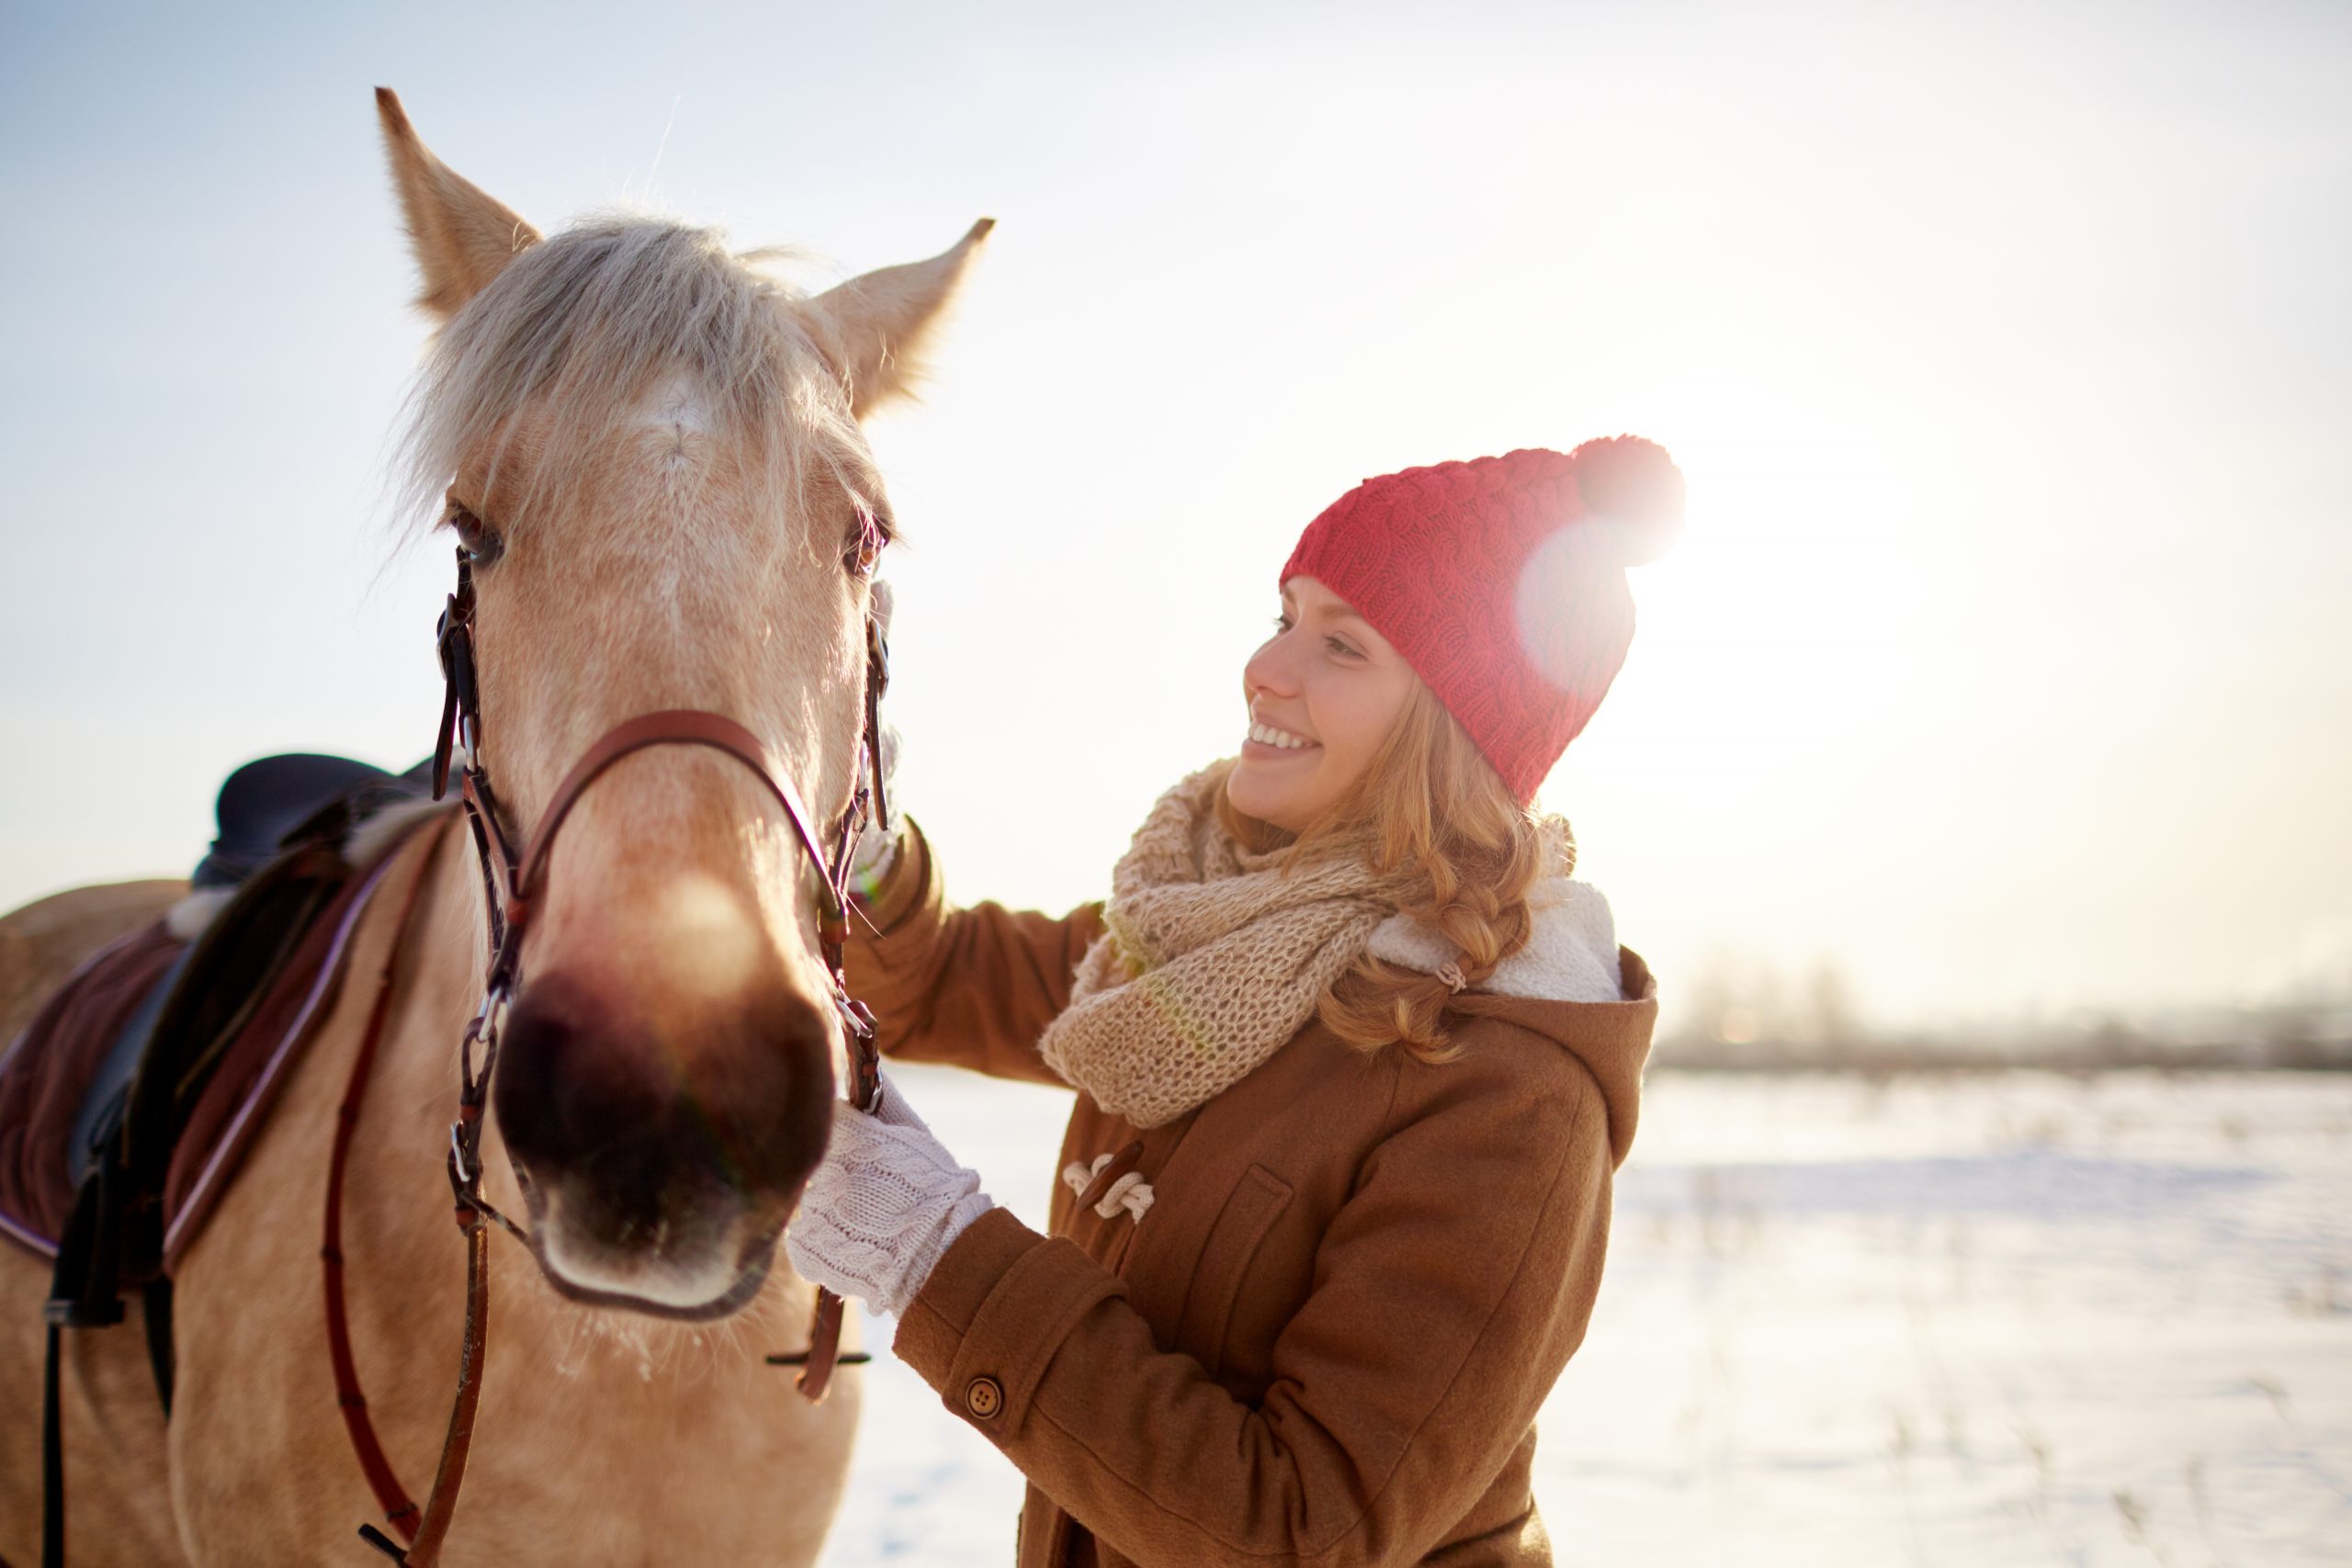 En blond kvinna med vinterkläder klappar en beige häst ute i snön.